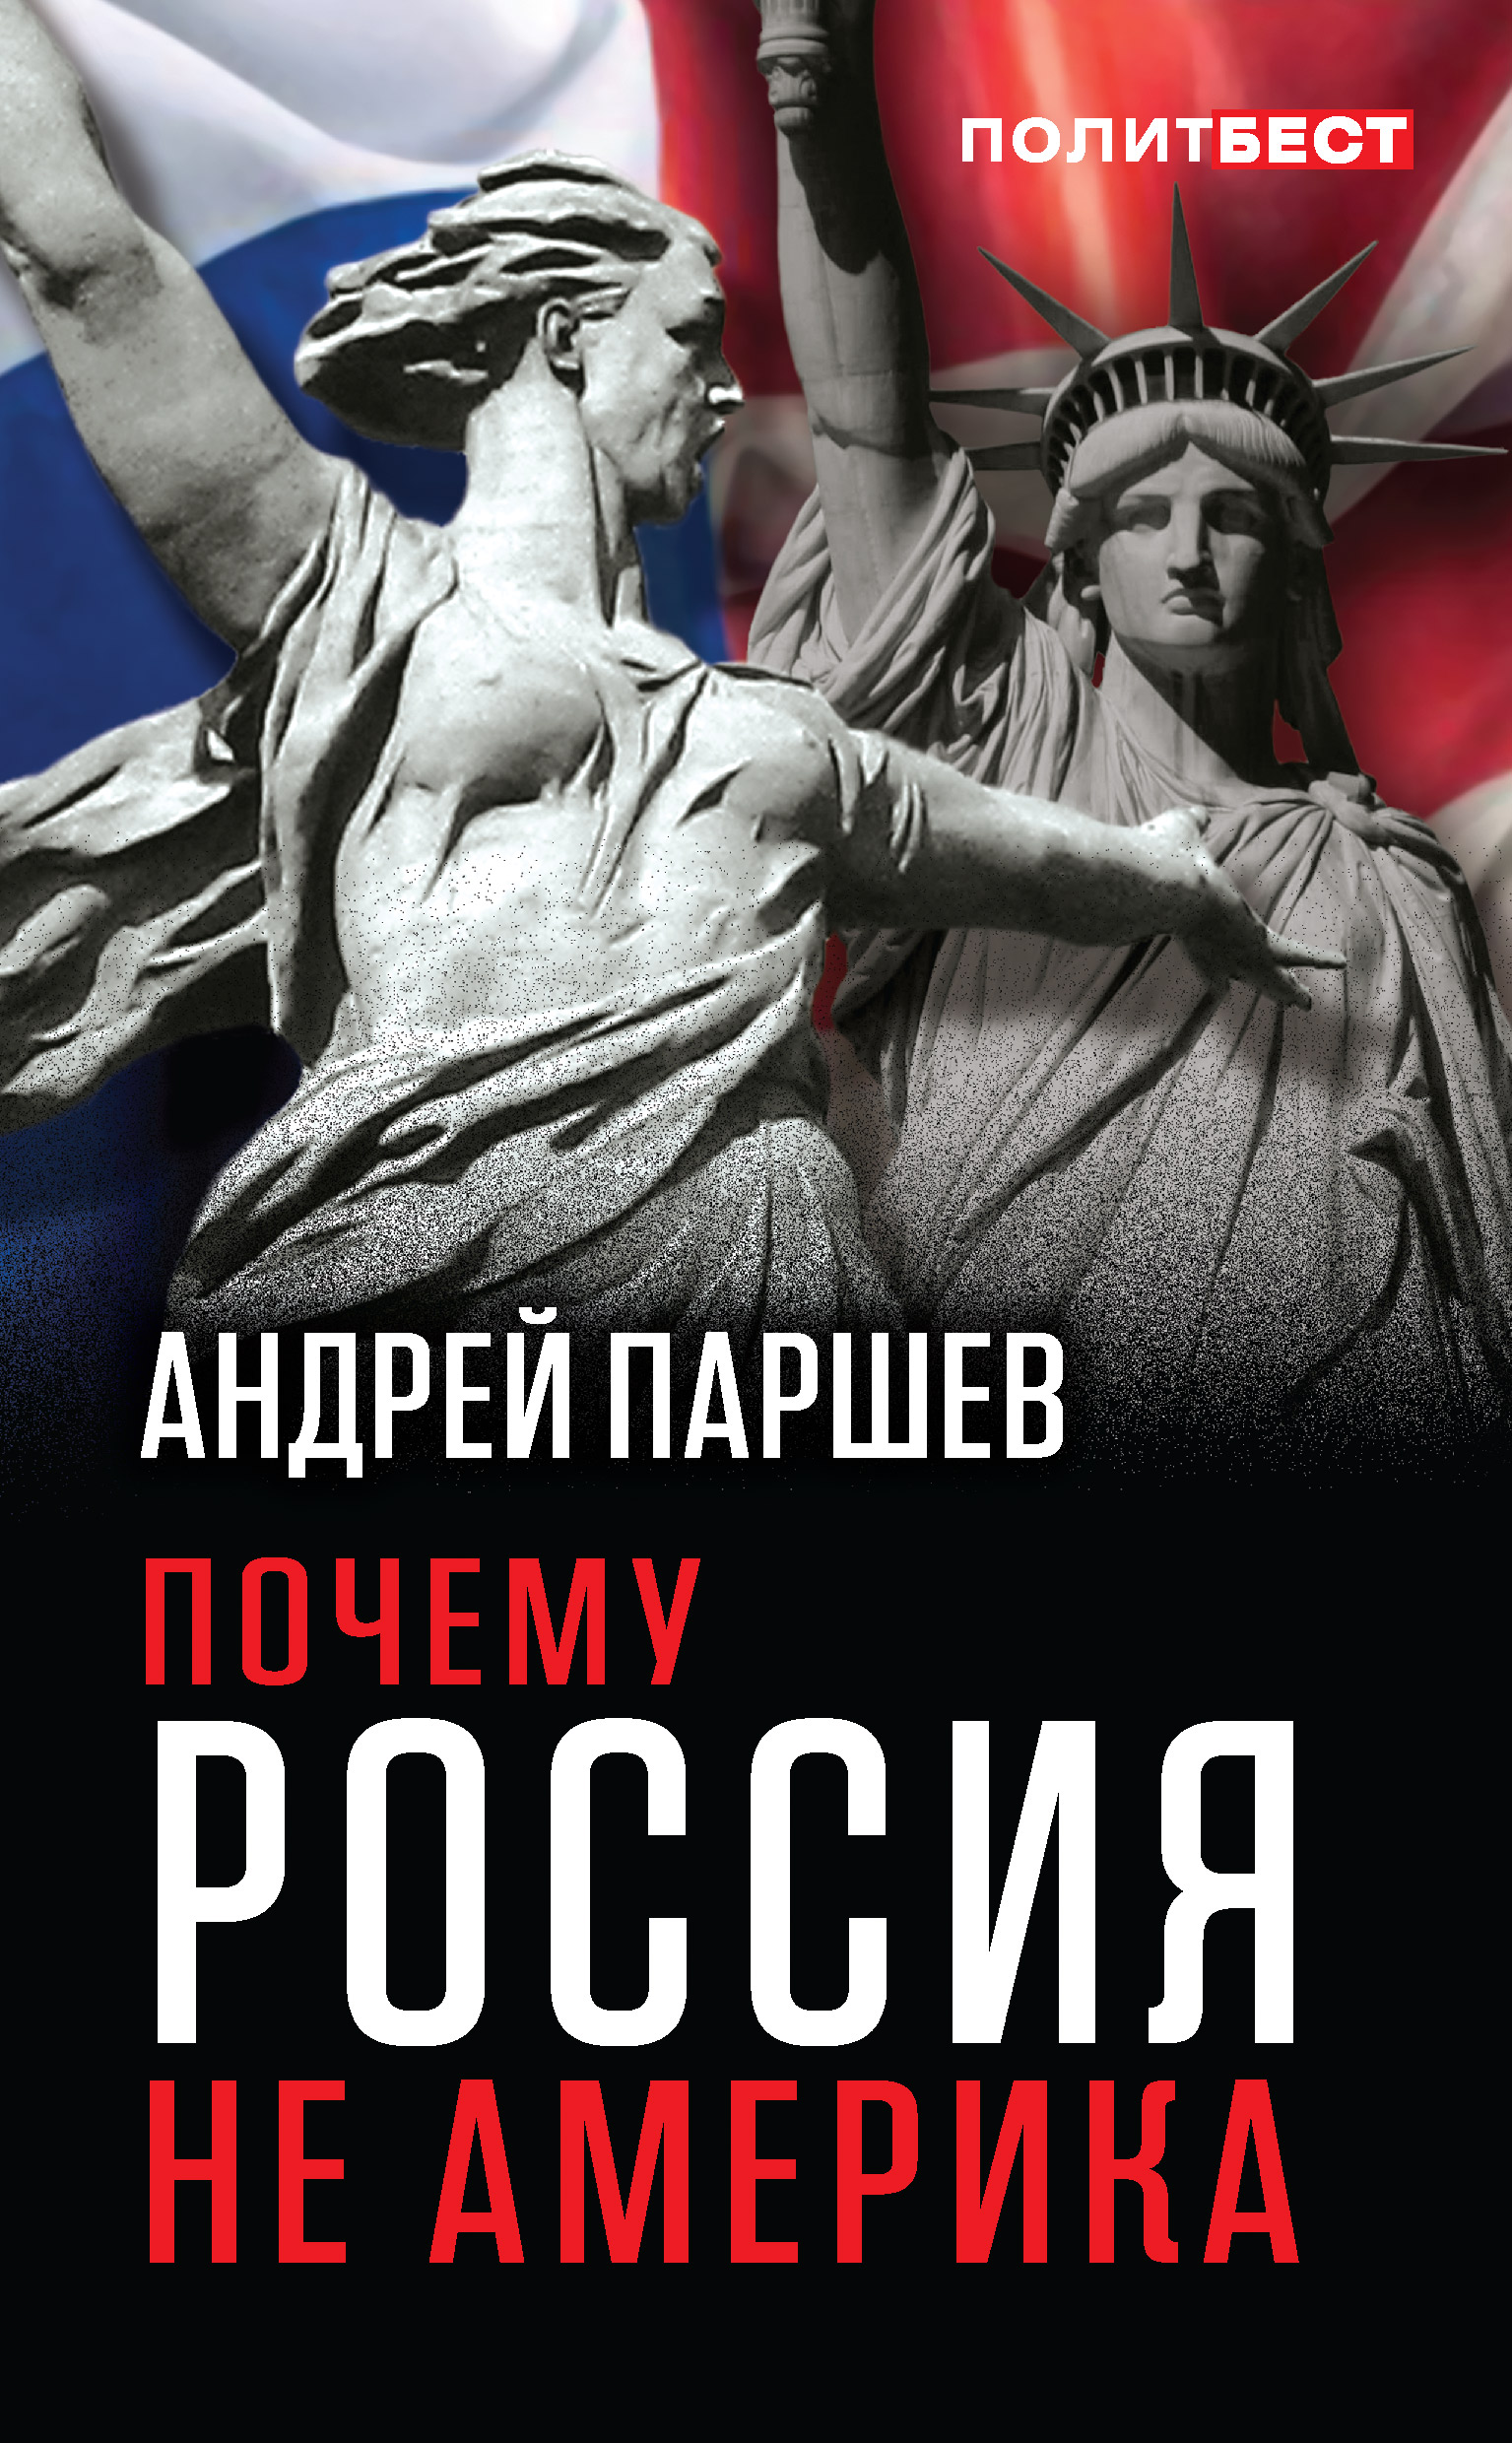 Почему Россия не Америка by Андрей Паршев - Audiobook | Everand